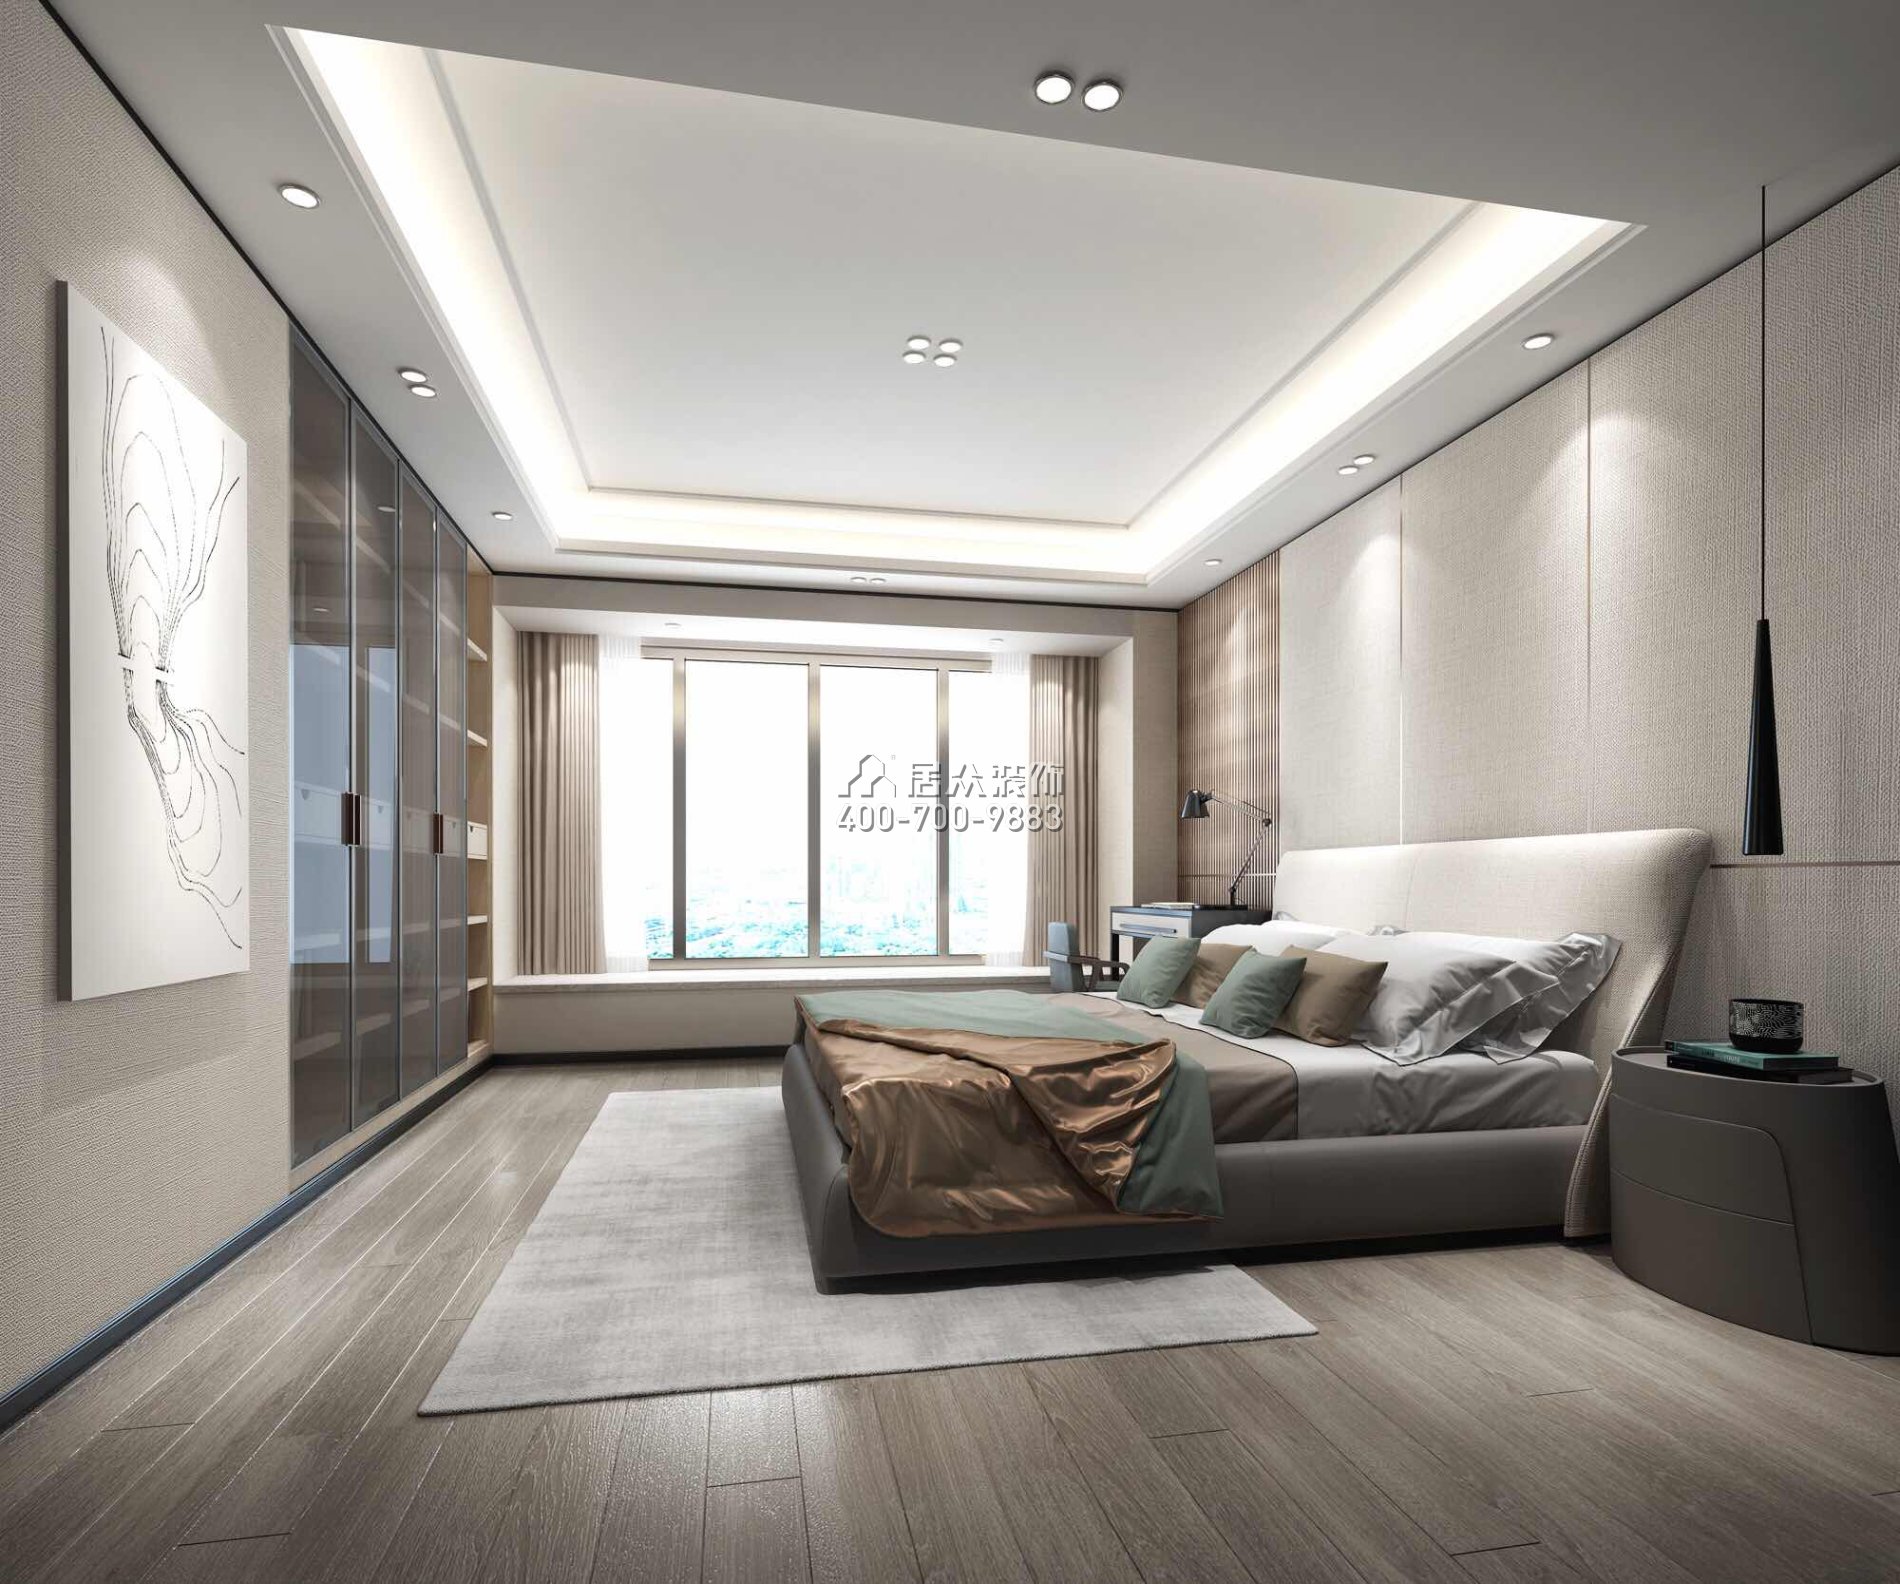 香山美墅四期203平方米現代簡約風格平層戶型臥室裝修效果圖